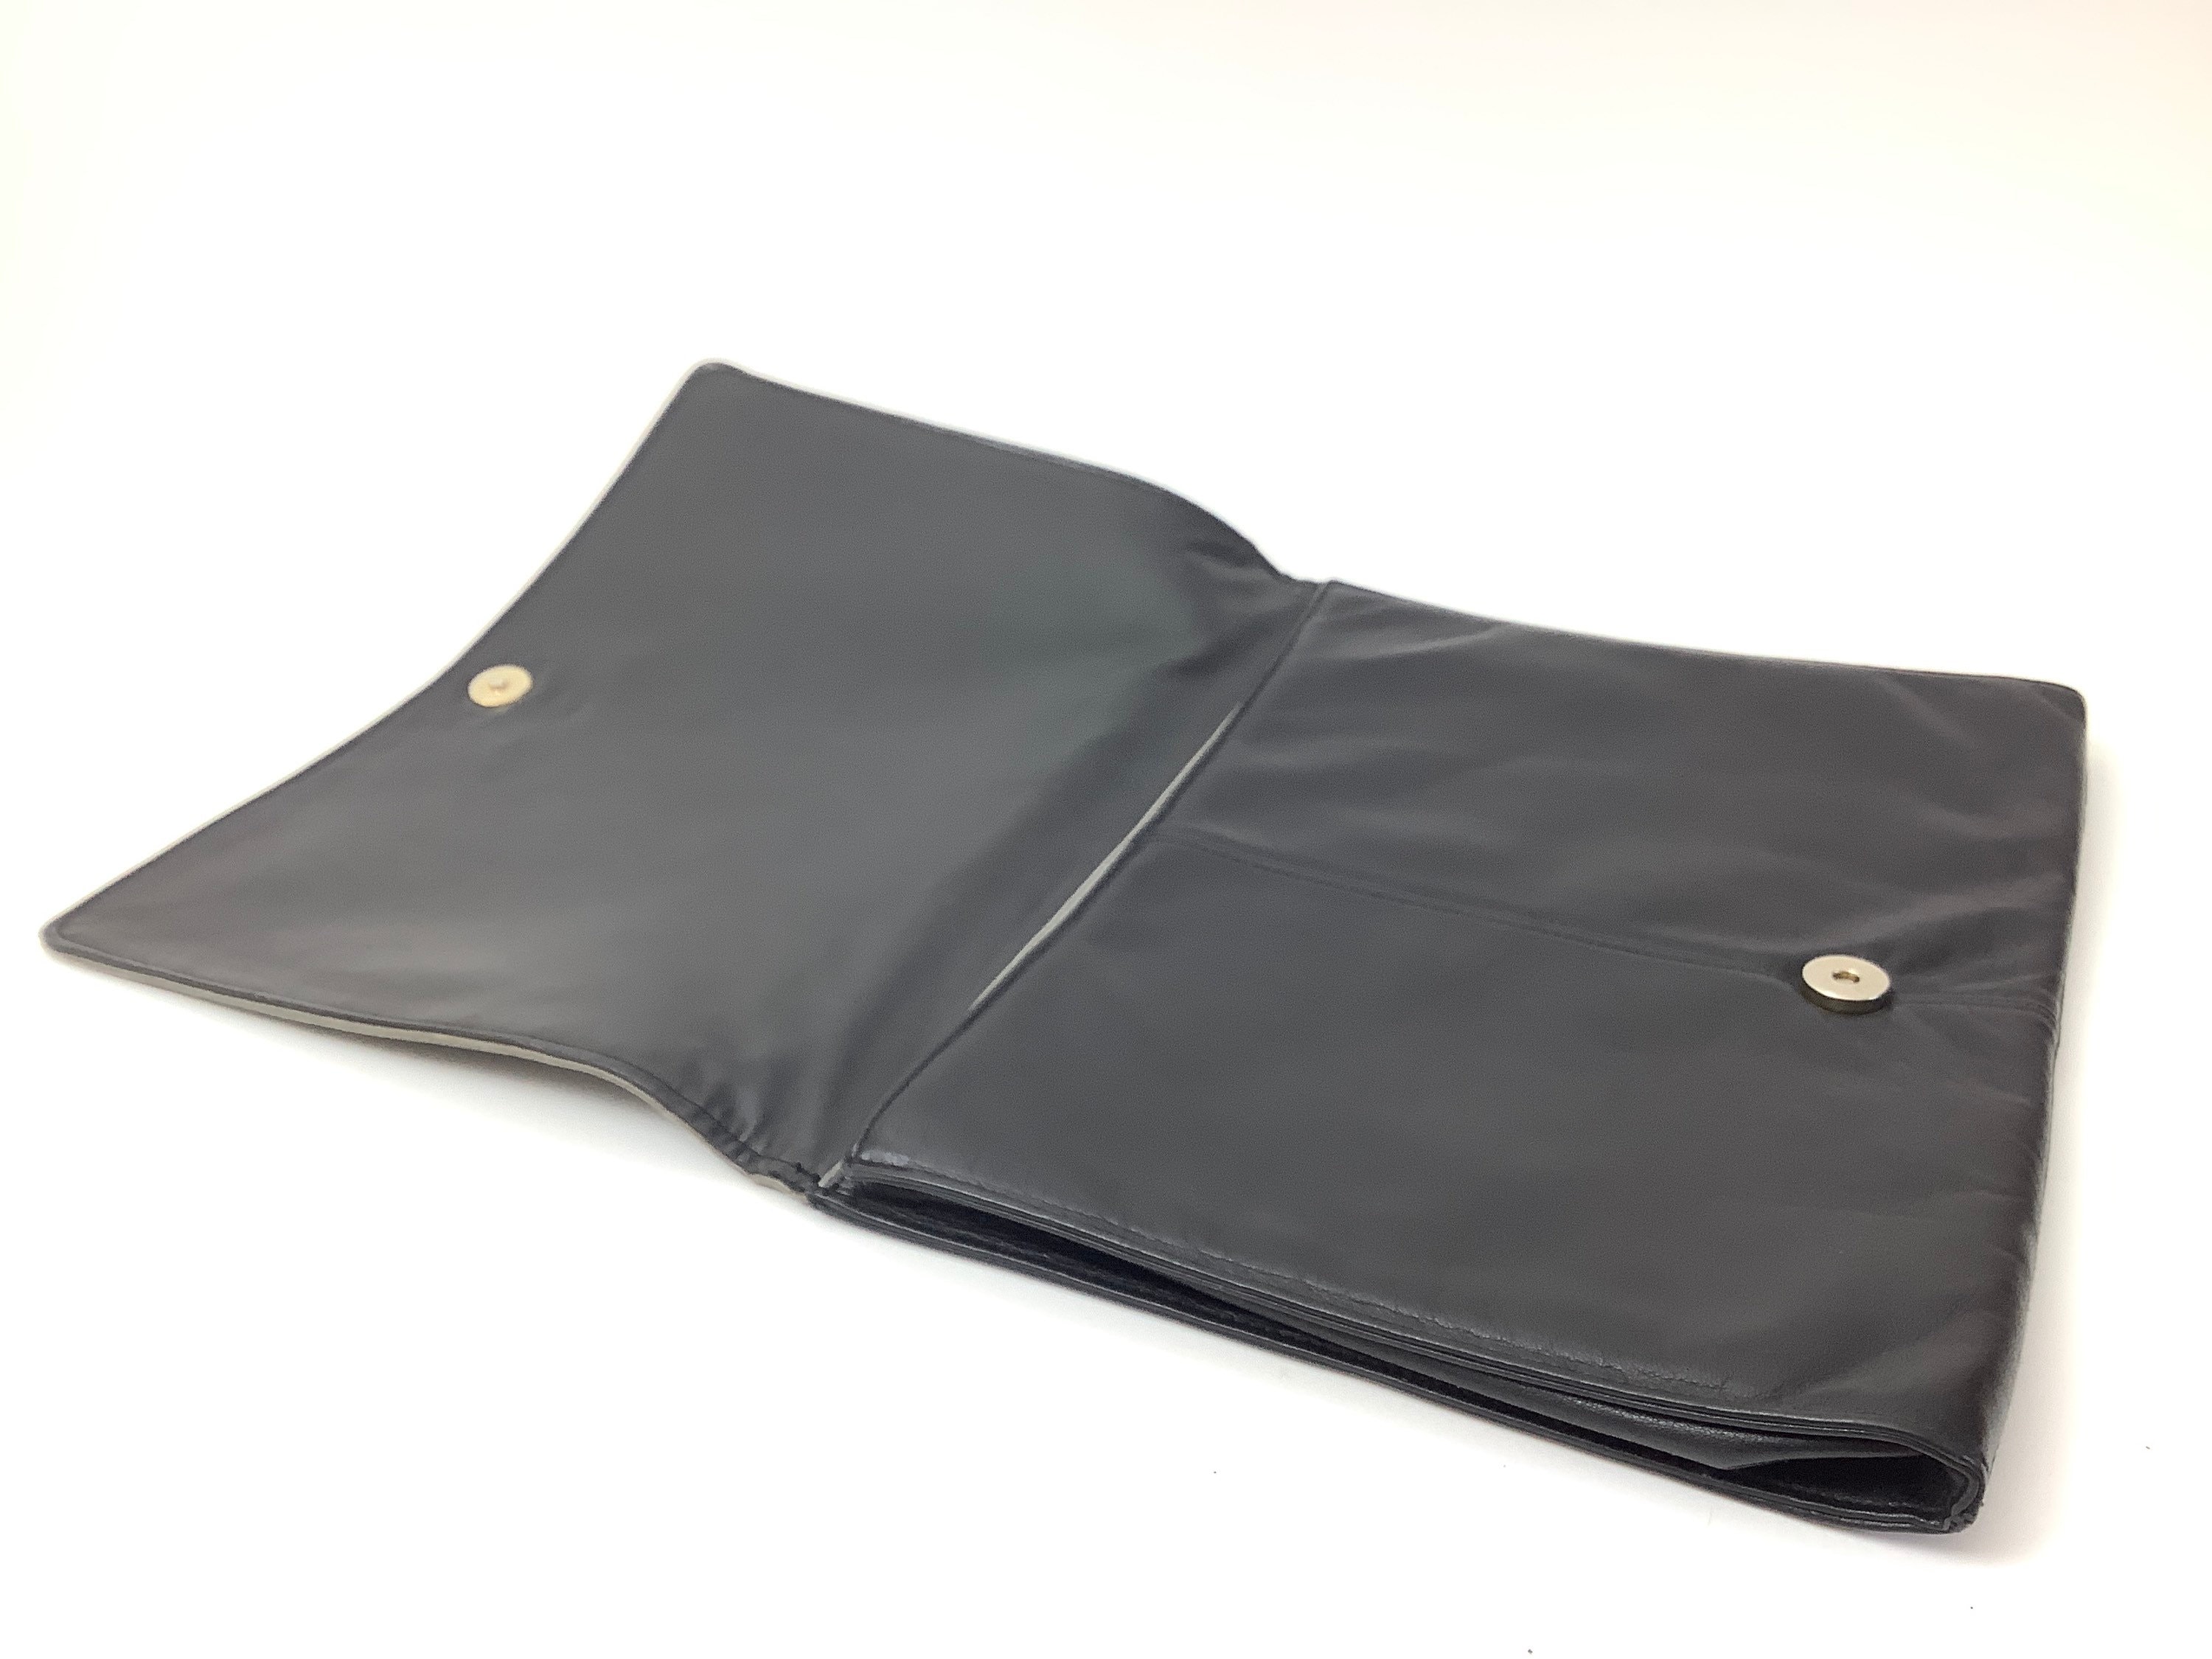 Buy Vintage Picard Bag Clutch Bag Retro Bag Old Clutch Bag Online